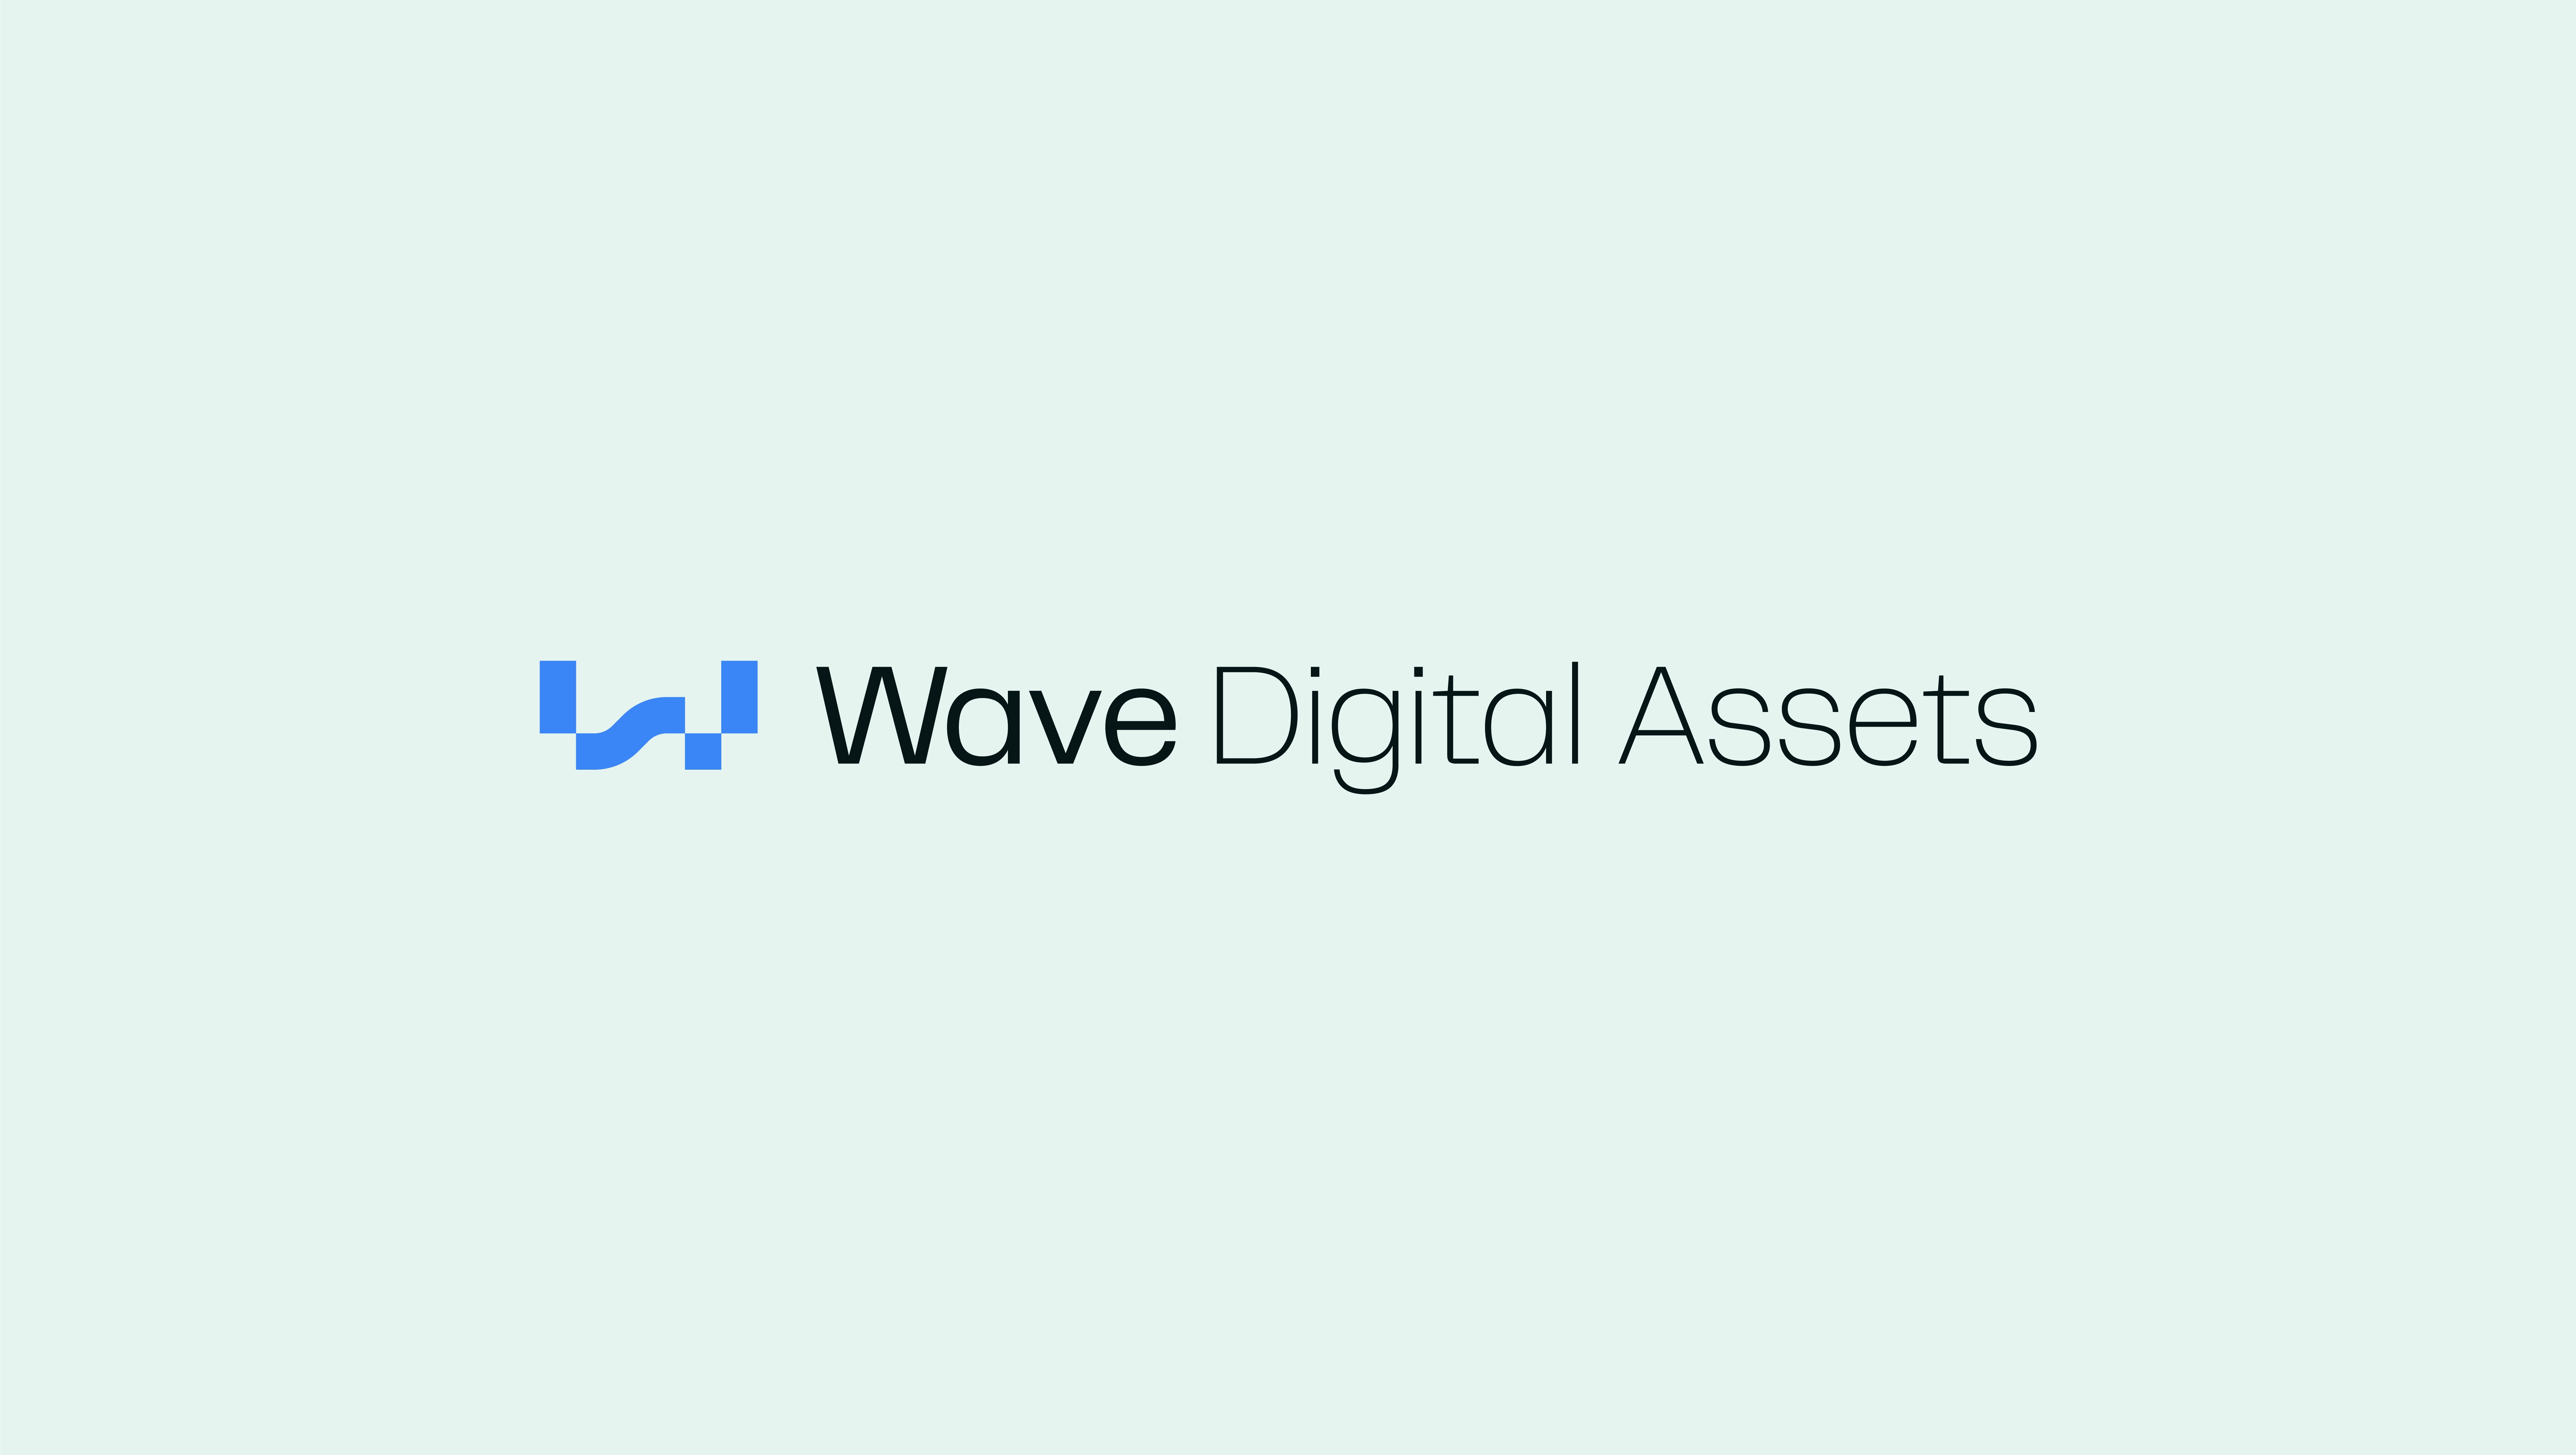 Wave Digital Assets Brand Redesign